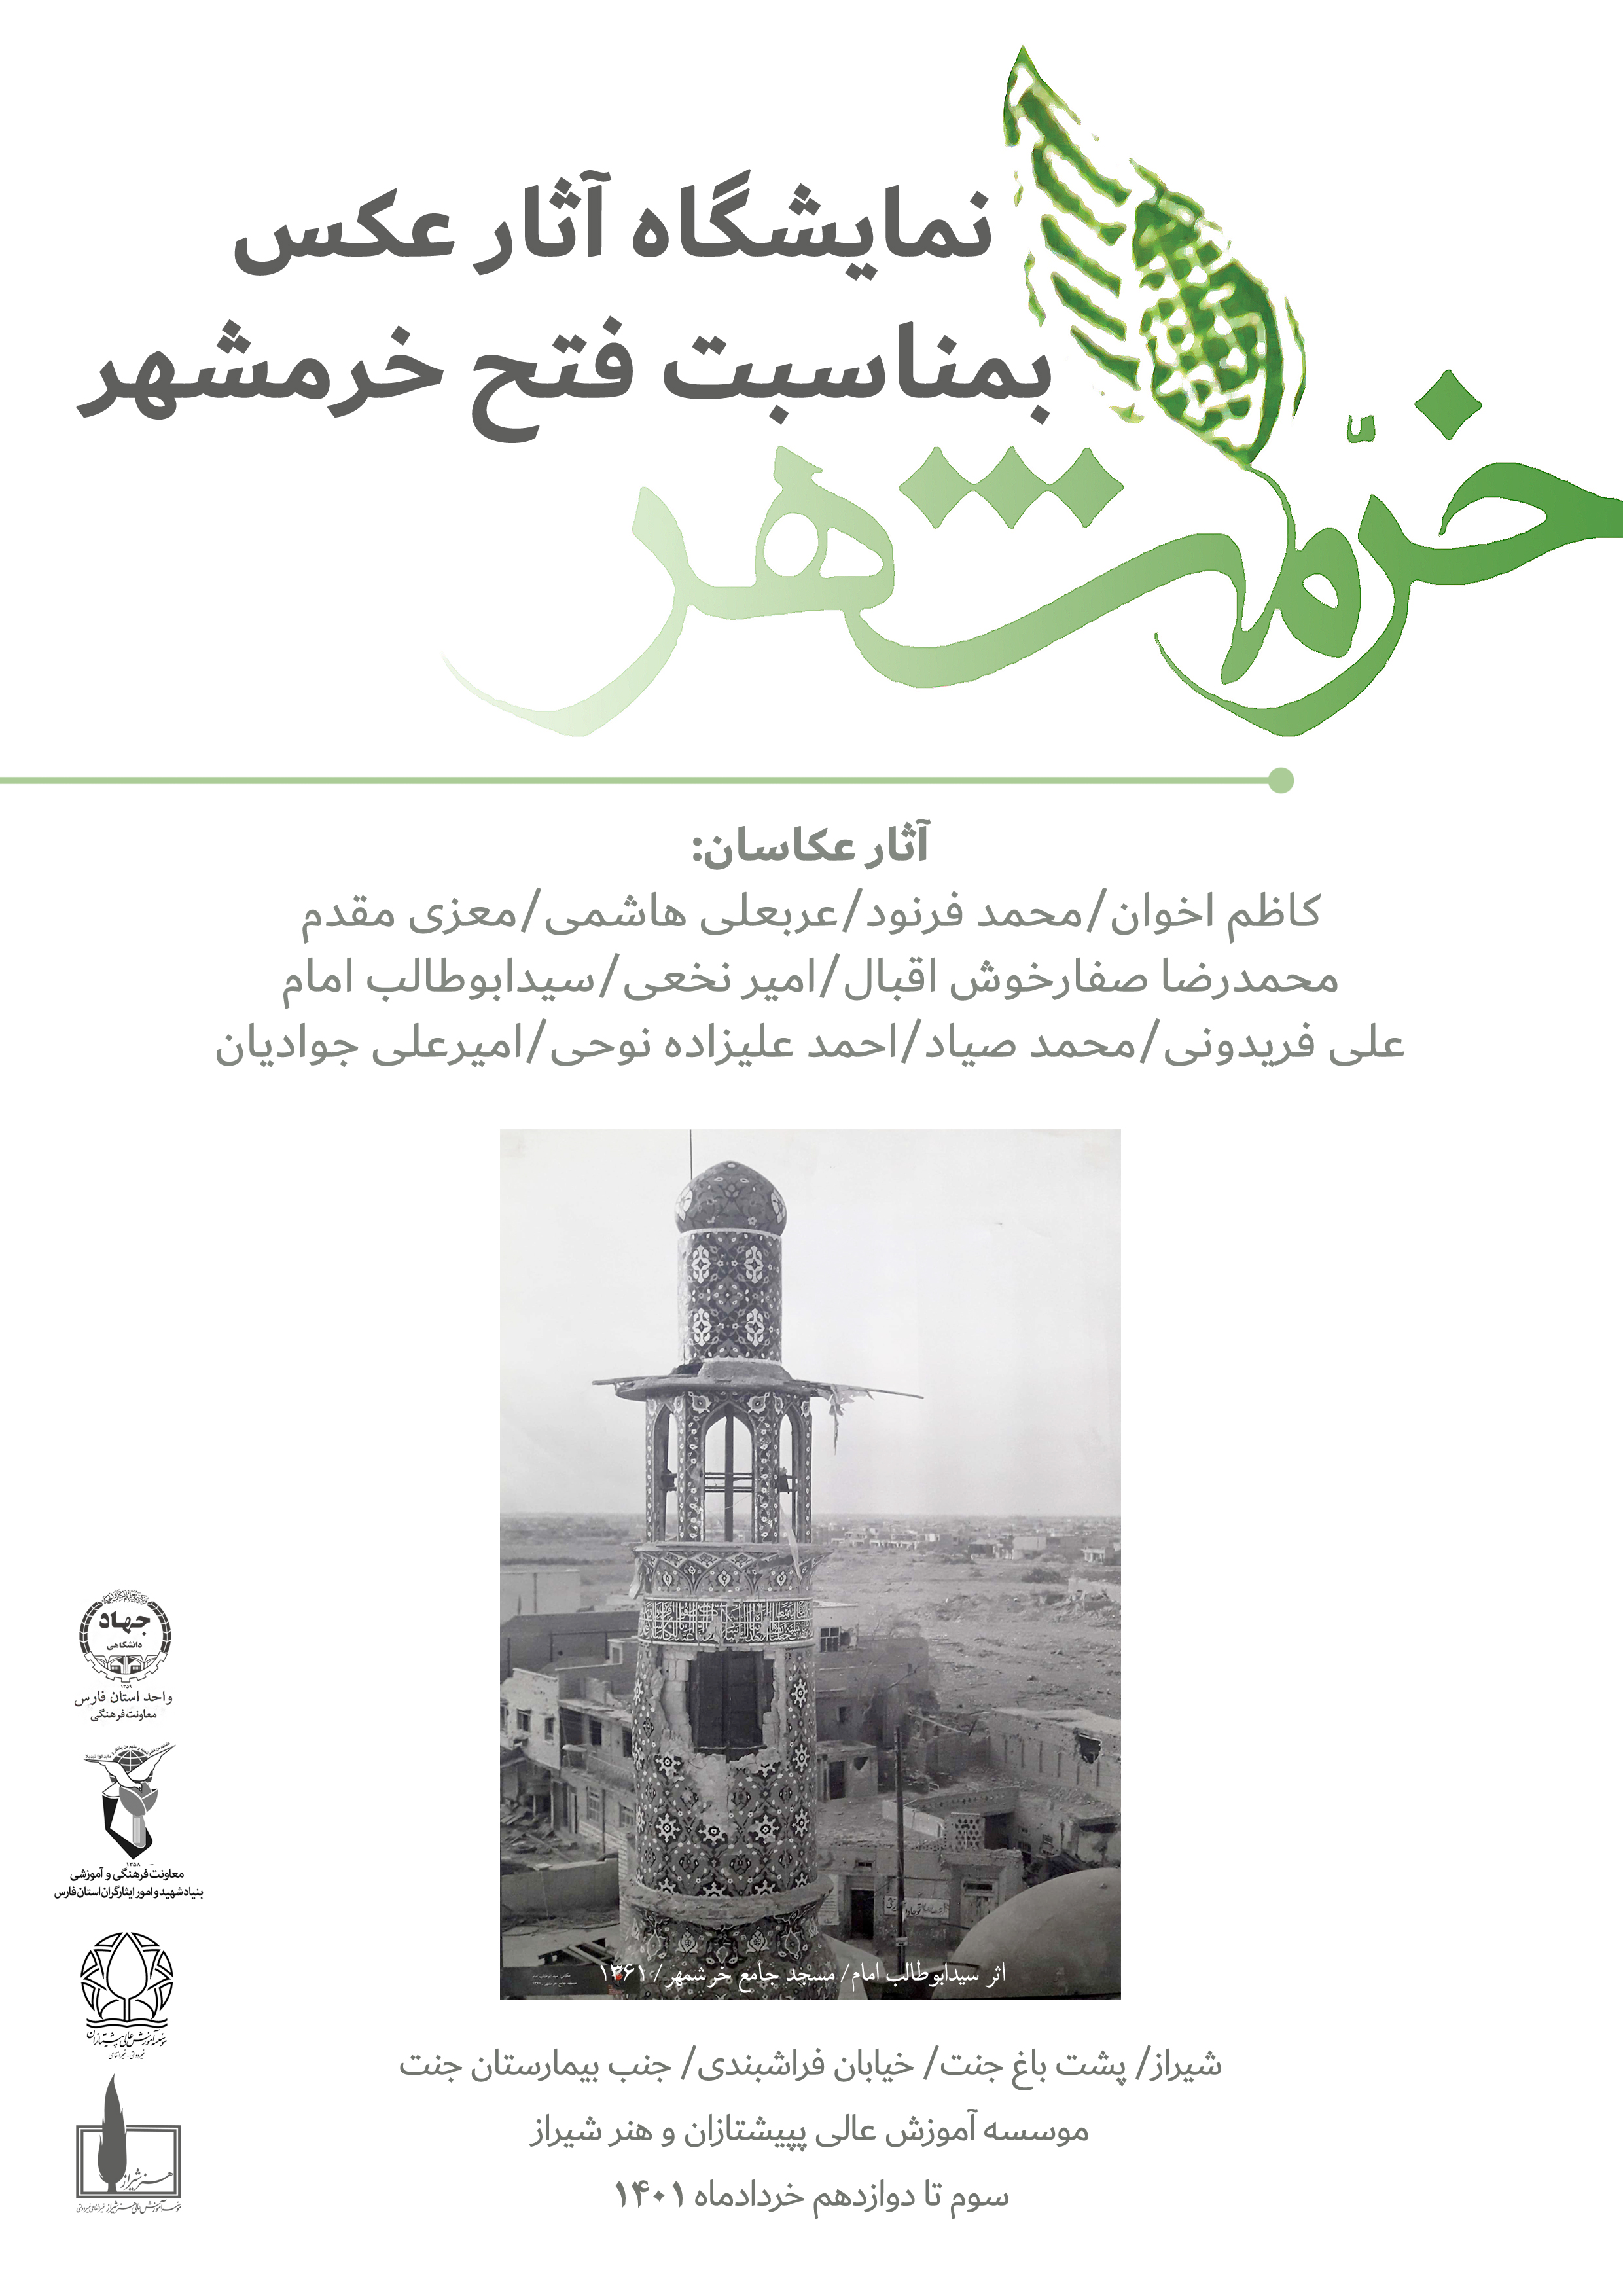 نمایشگاه آثار عکس به مناسبت فتح خرمشهر